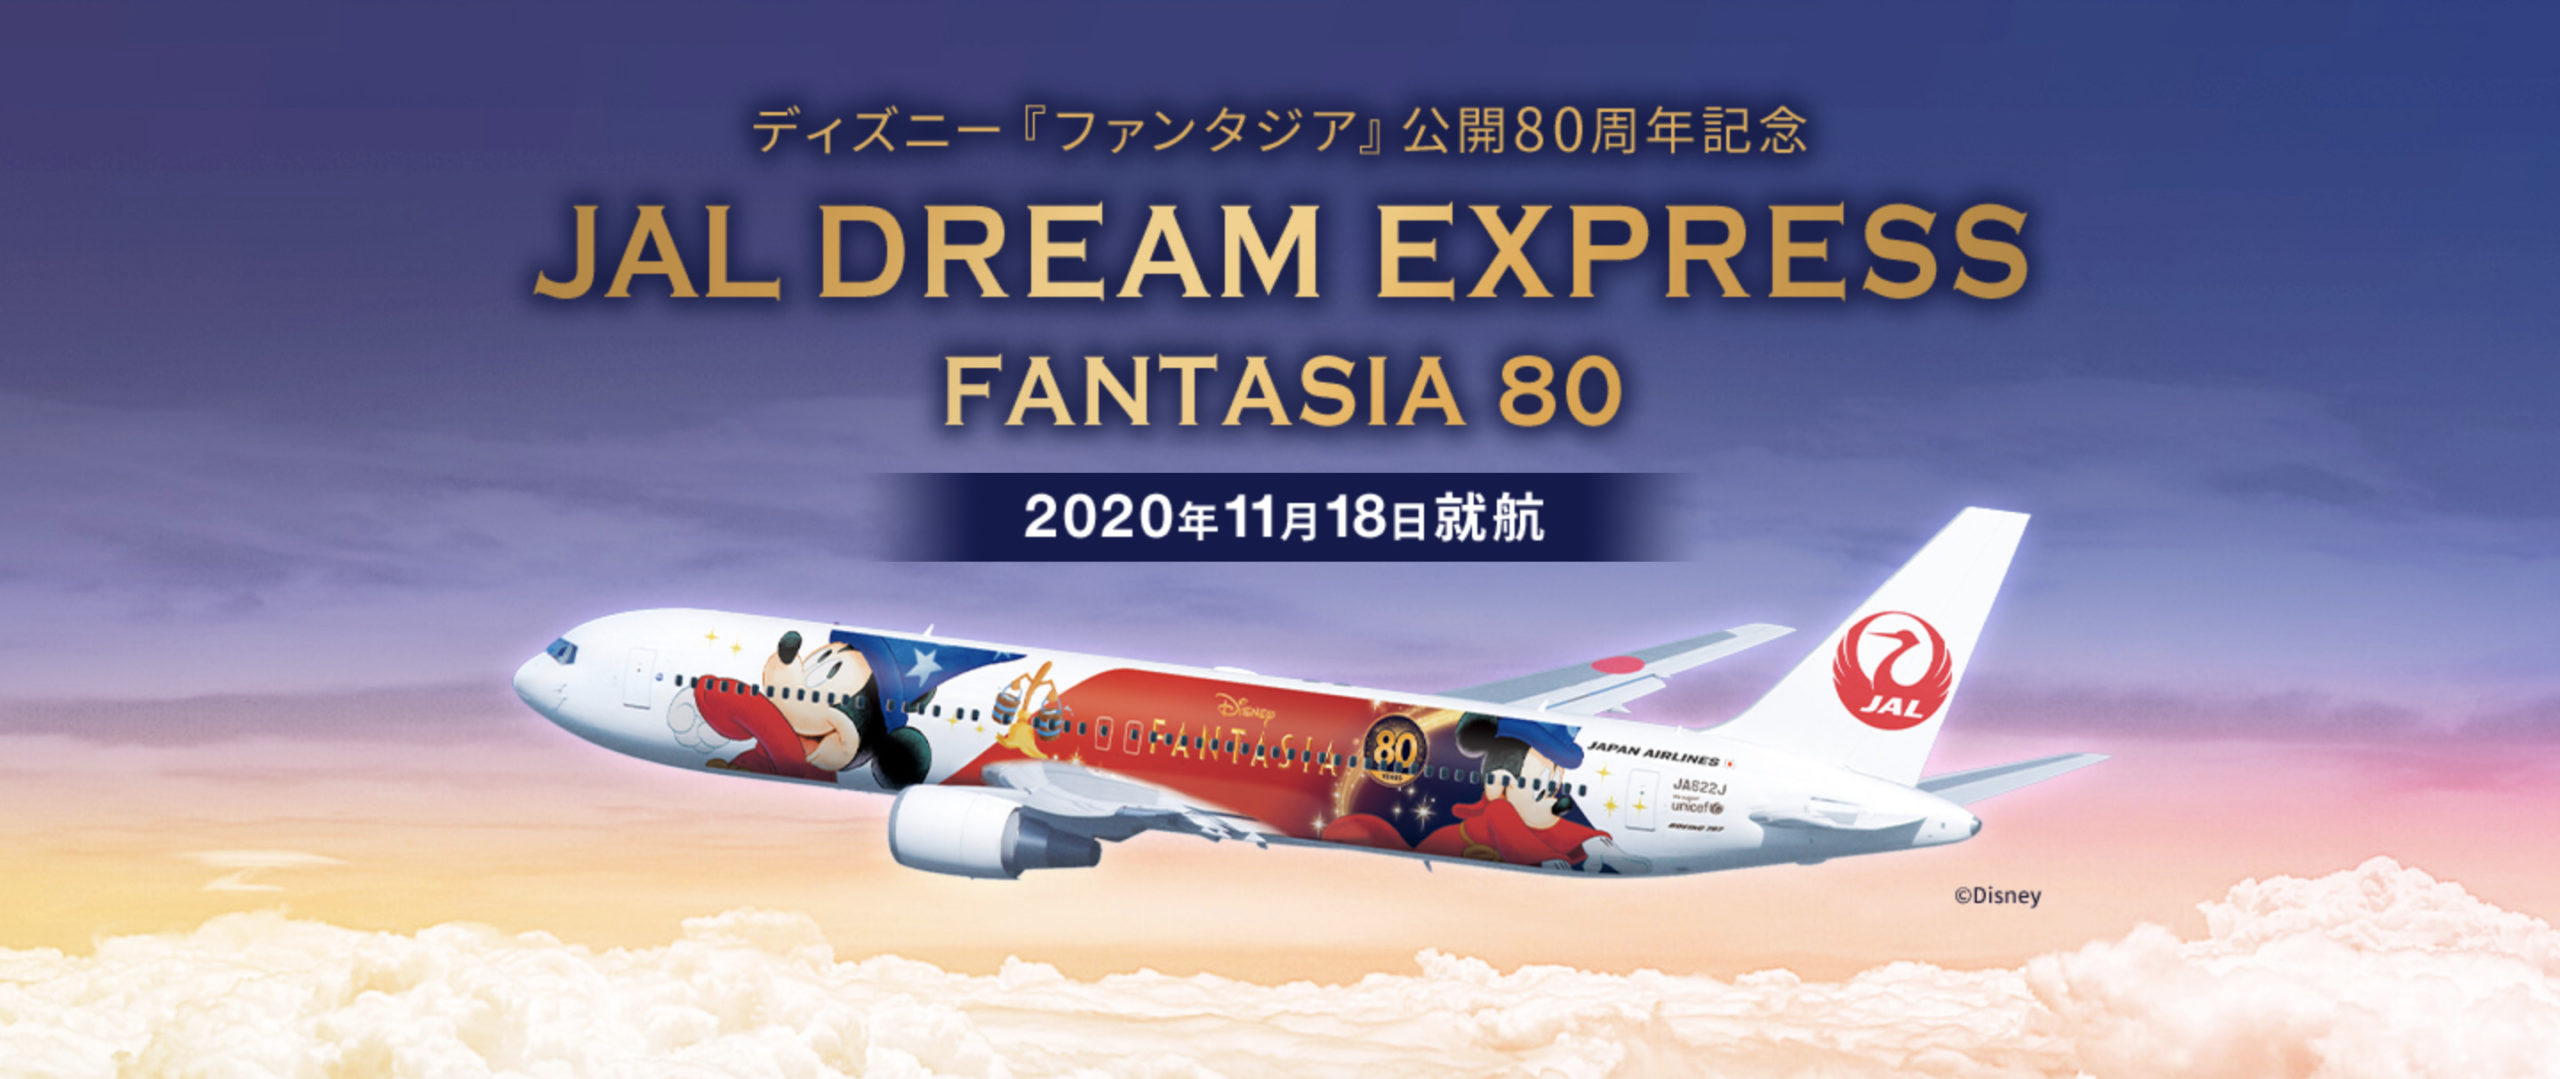 フライトスケジュール毎日更新 ディズニー ファンタジア 公開80周年記念 Jal Dream Express Fantasia 80 運航開始 シテイリョウコウ